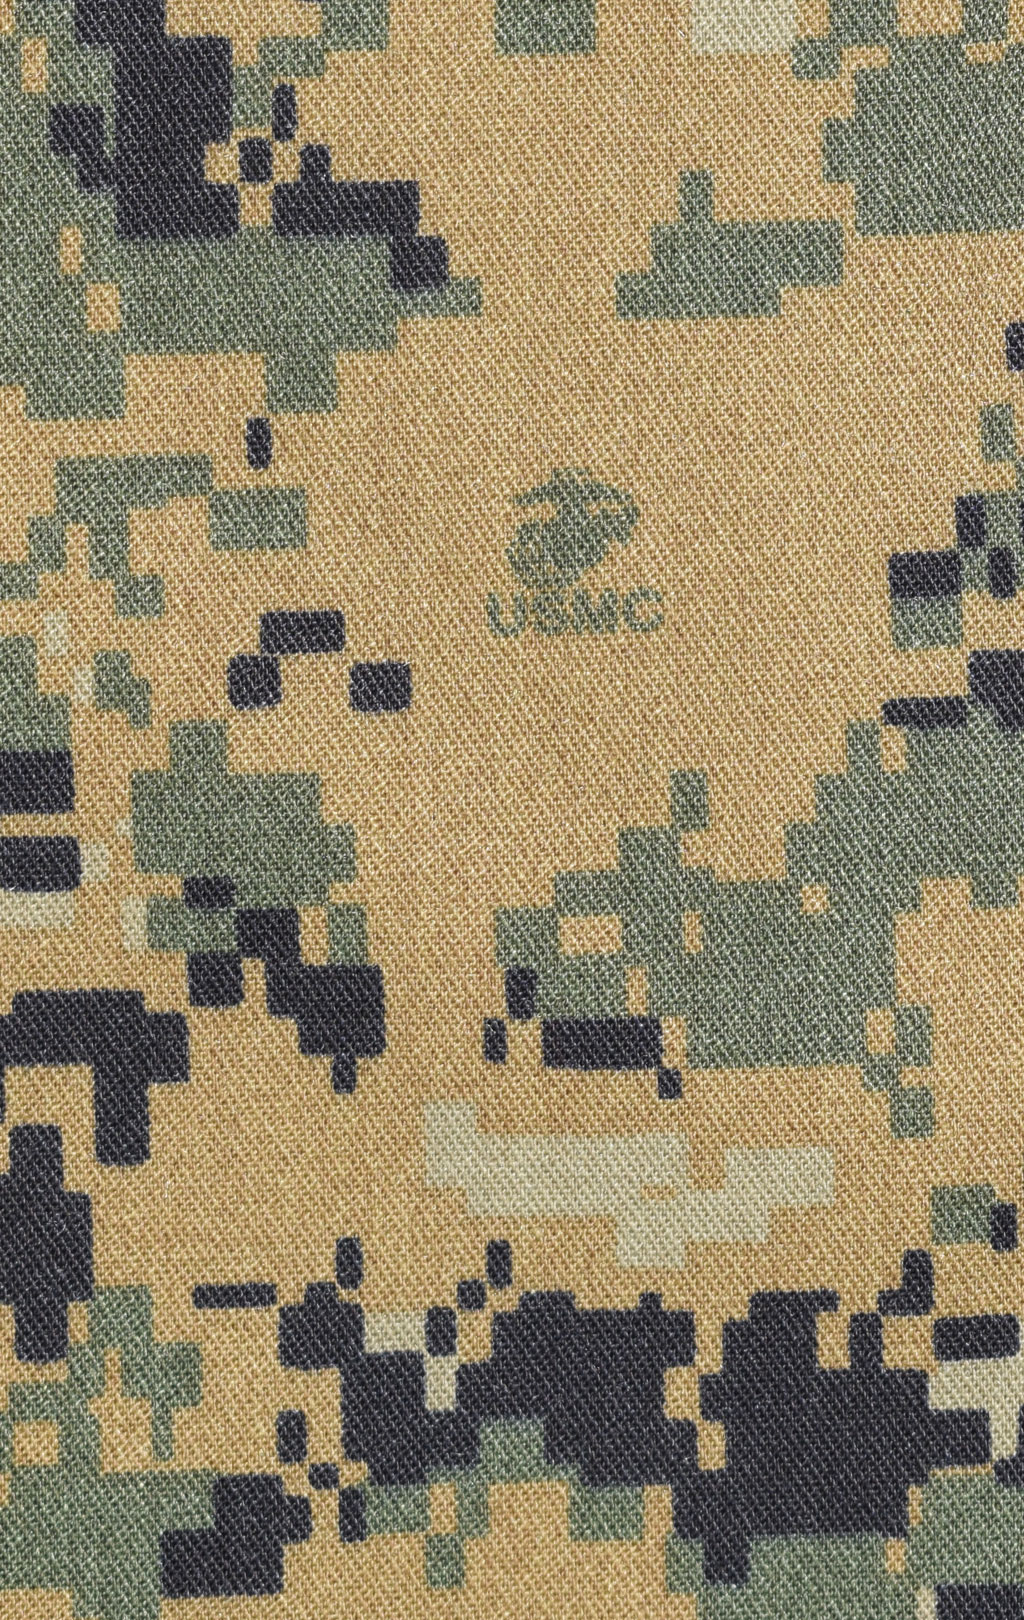 Брюки полевые USMC хлопок/нейлон marpat woodland США